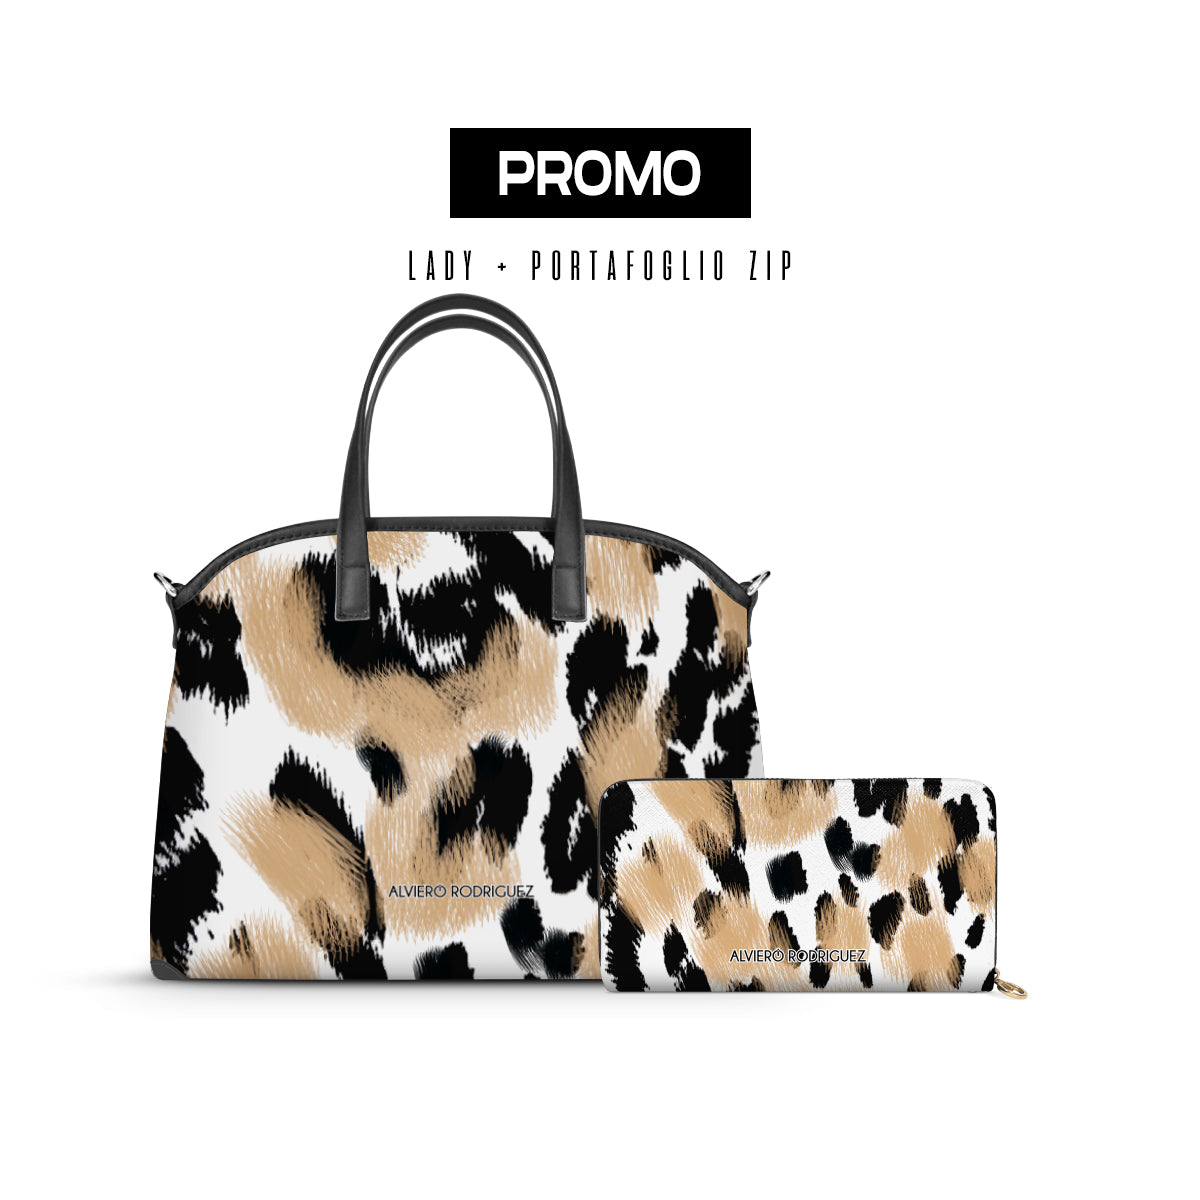 Promo Lady + Portafoglio Zip Leopard Brush